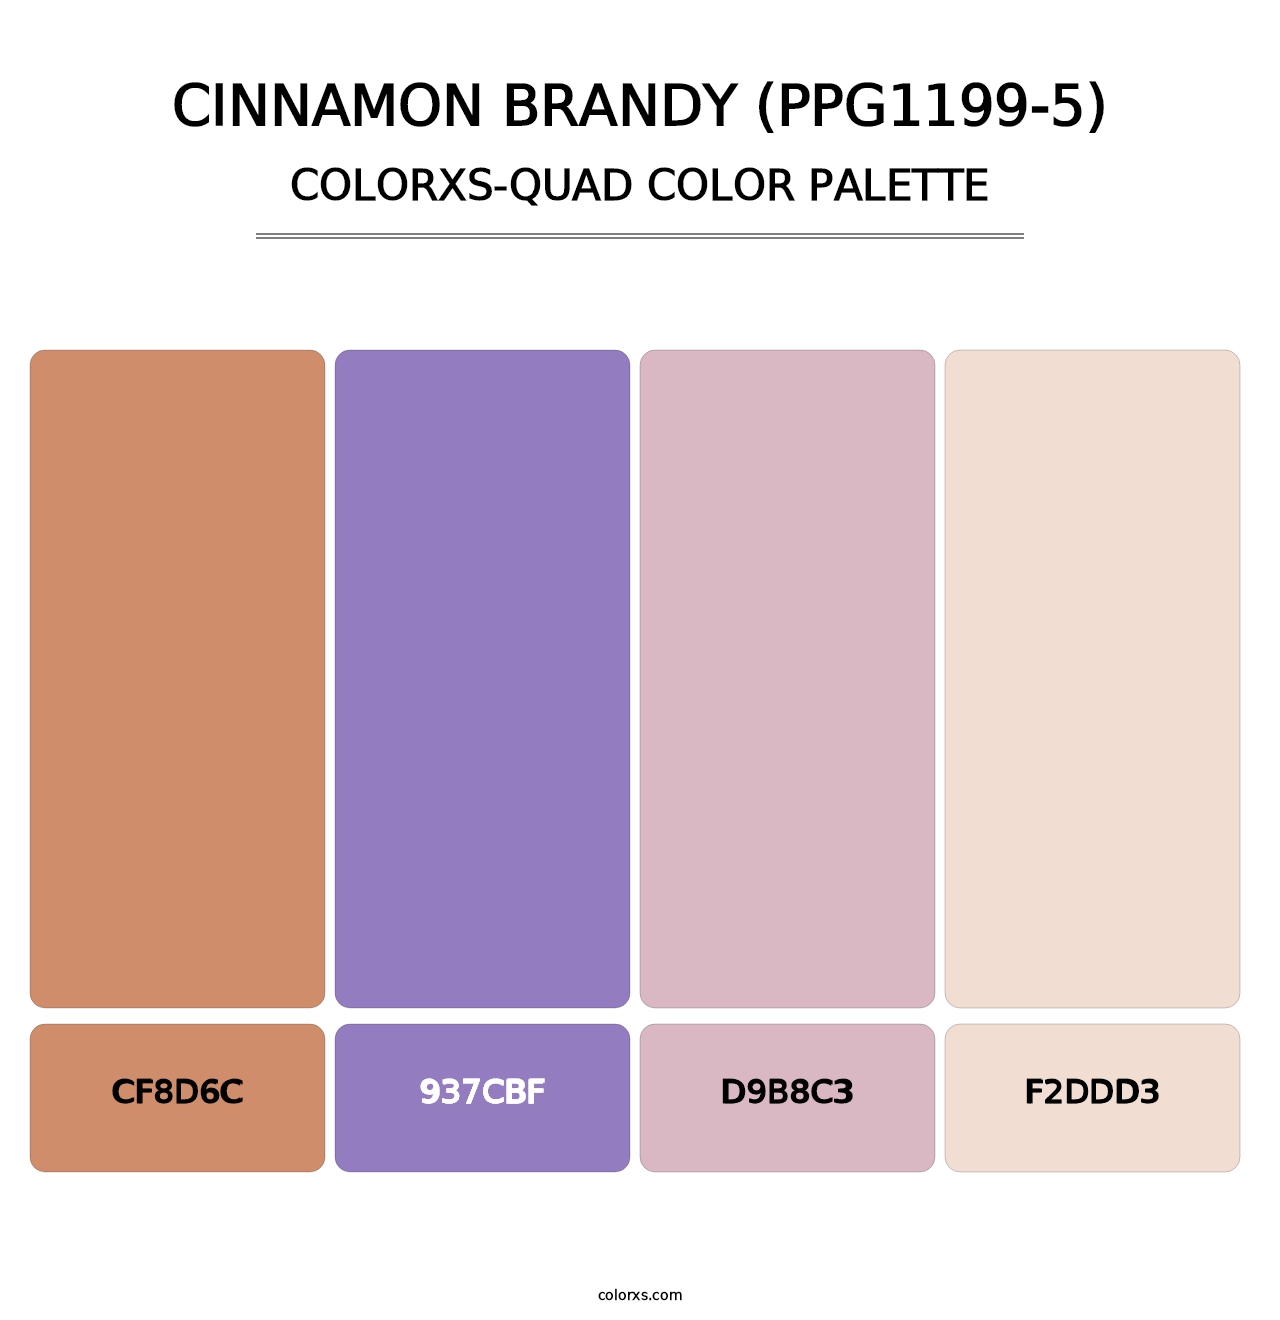 Cinnamon Brandy (PPG1199-5) - Colorxs Quad Palette